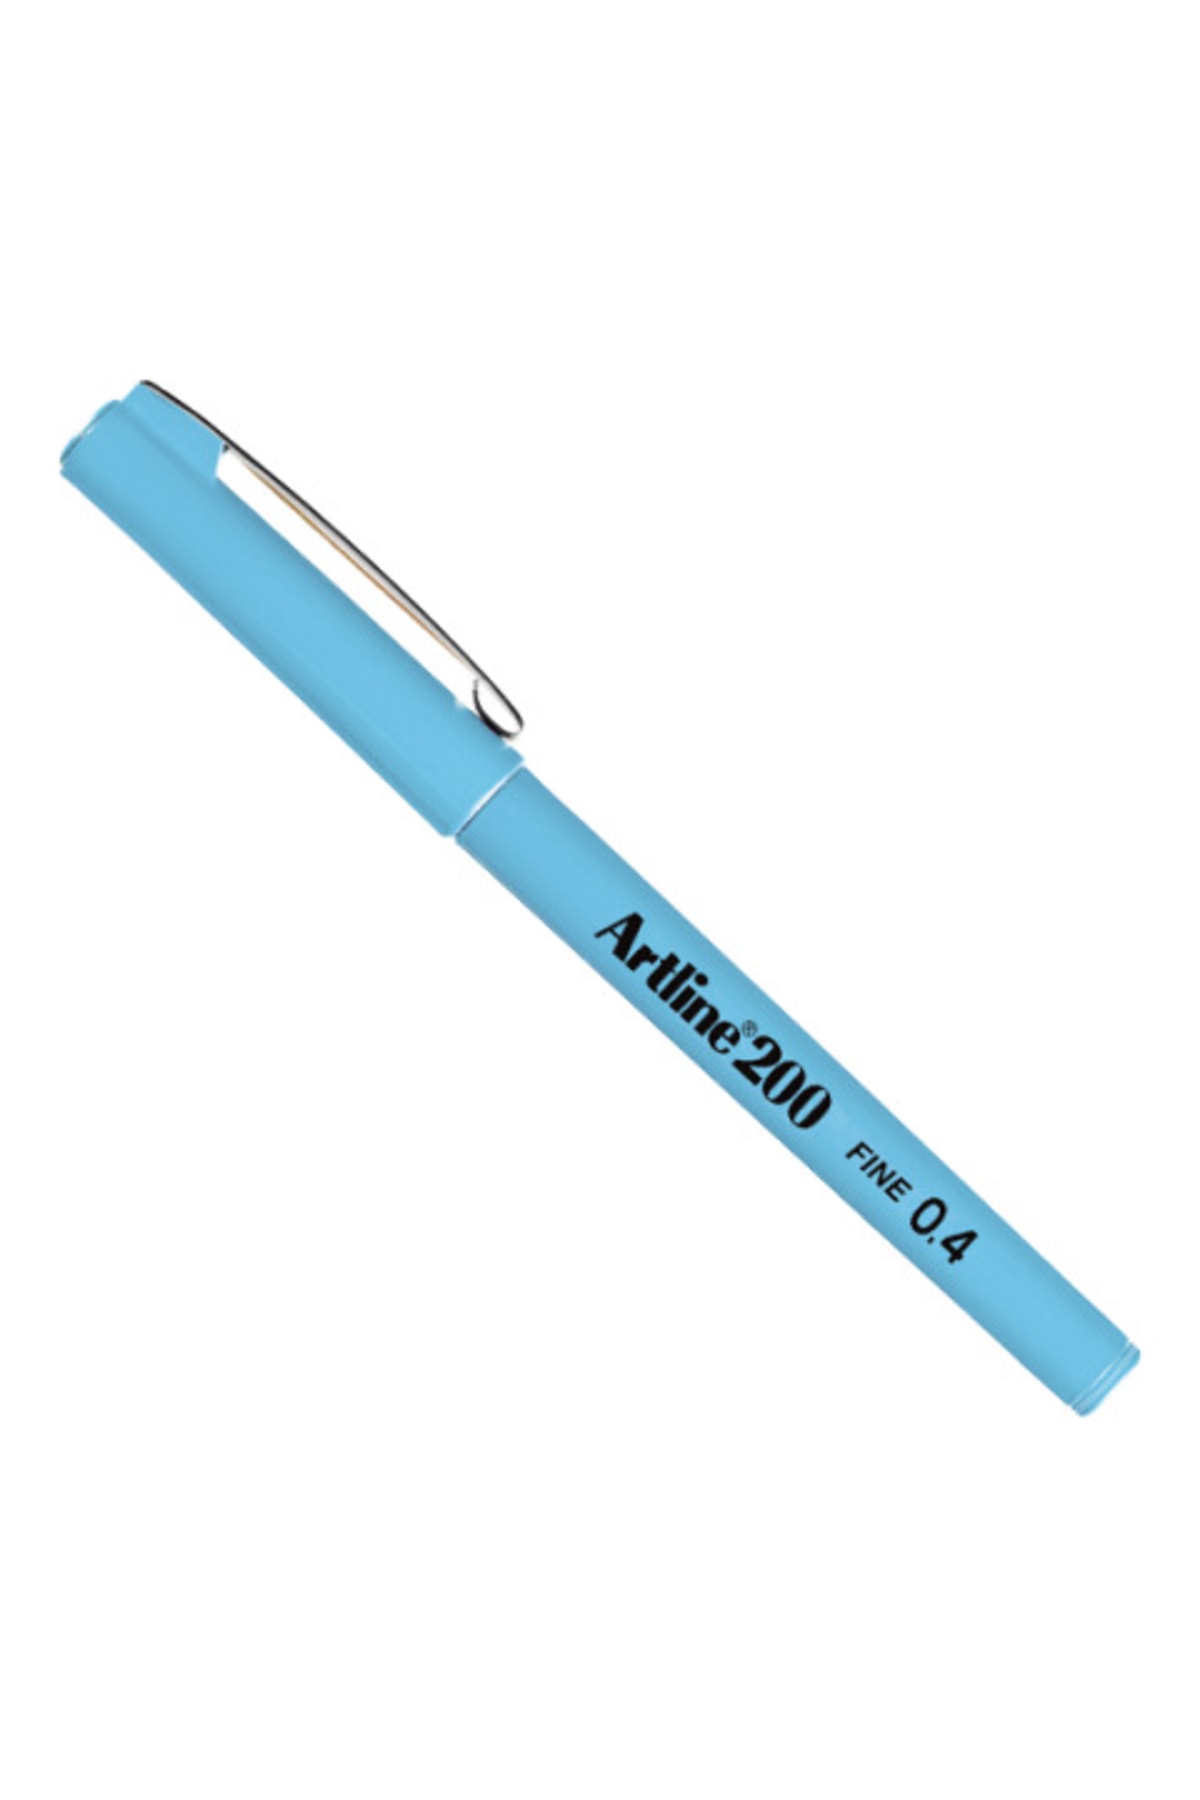 artline 200 Fineliner 0.4mm Ince Uçlu Yazı Ve Çizim Kalemi Açık Mavi